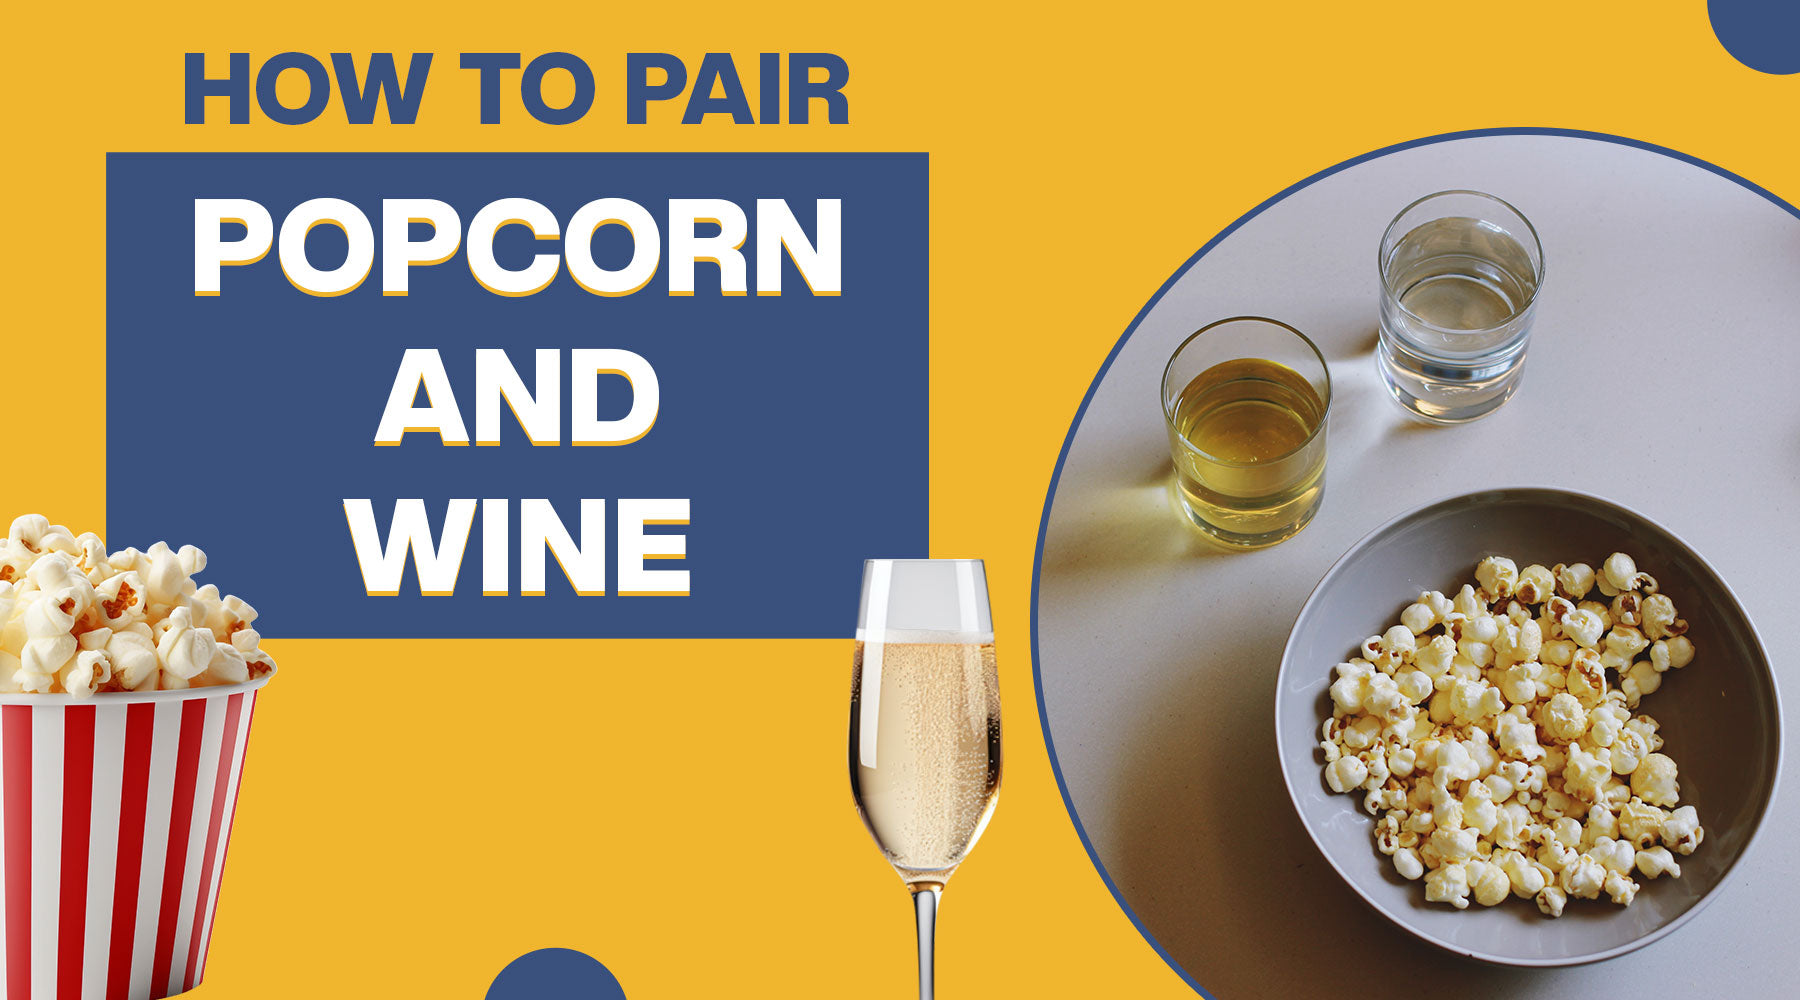 Popcorn and wine